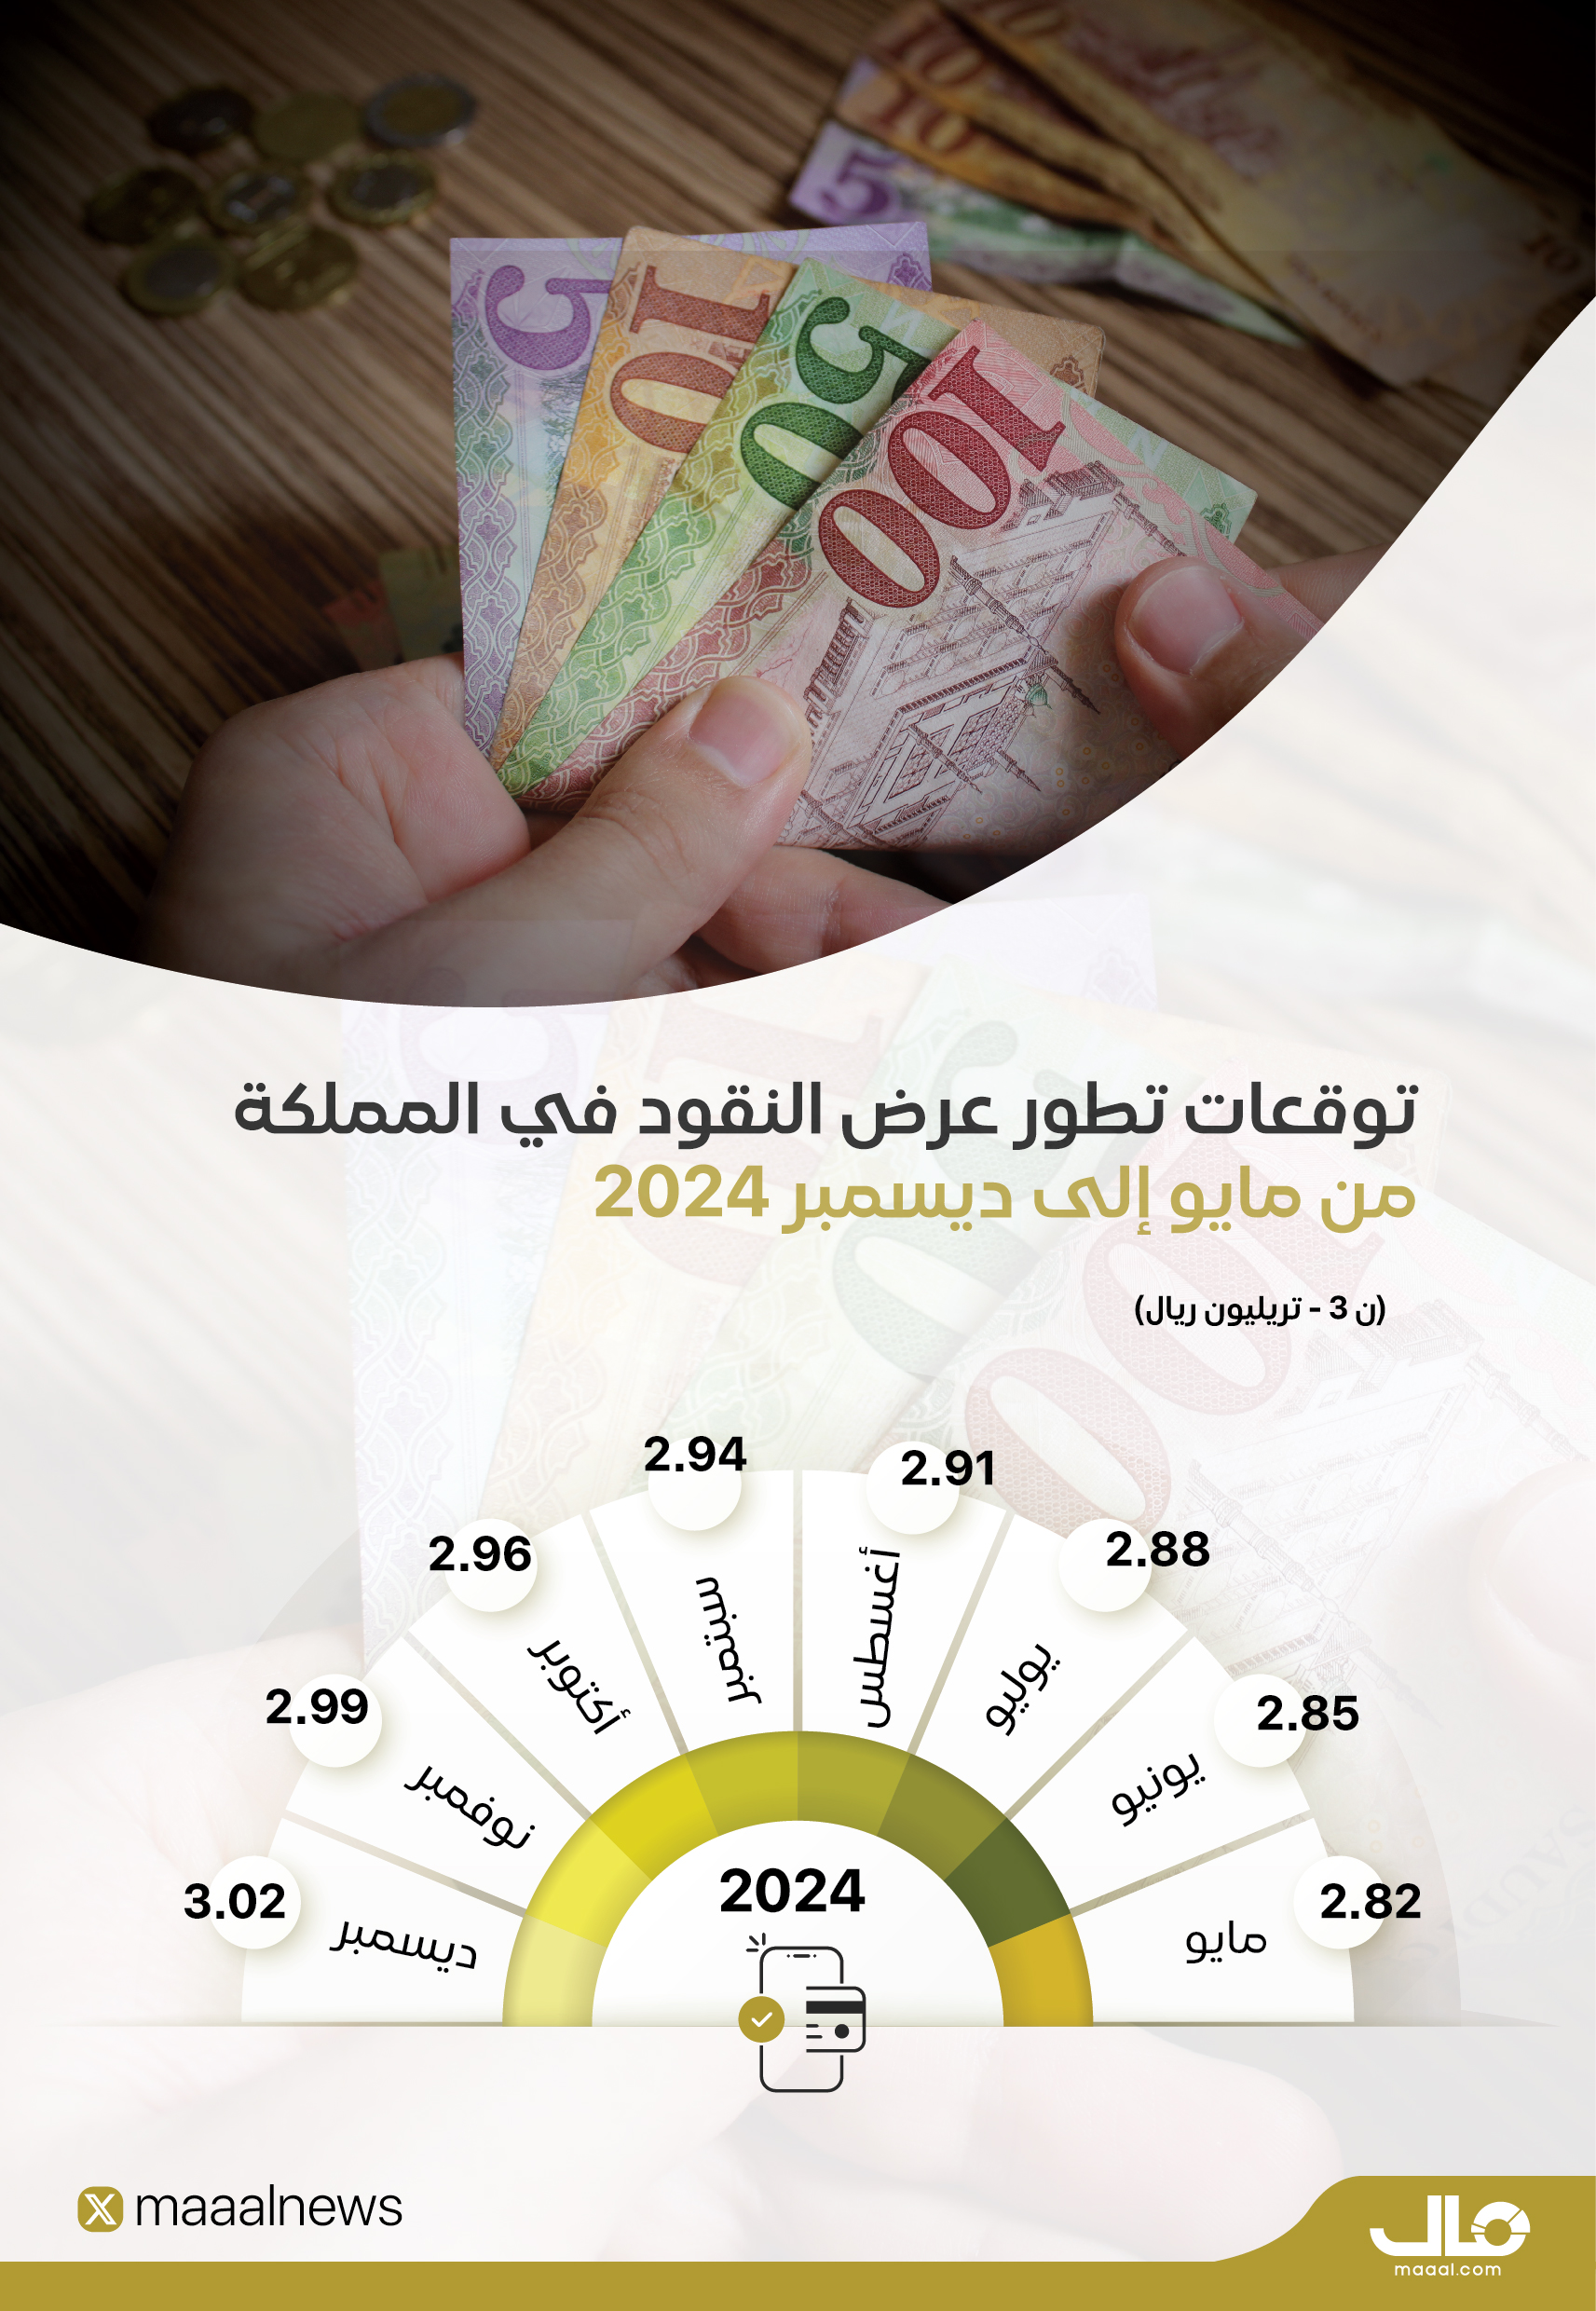 توقعات تطور عرض النقود في المملكة (1)